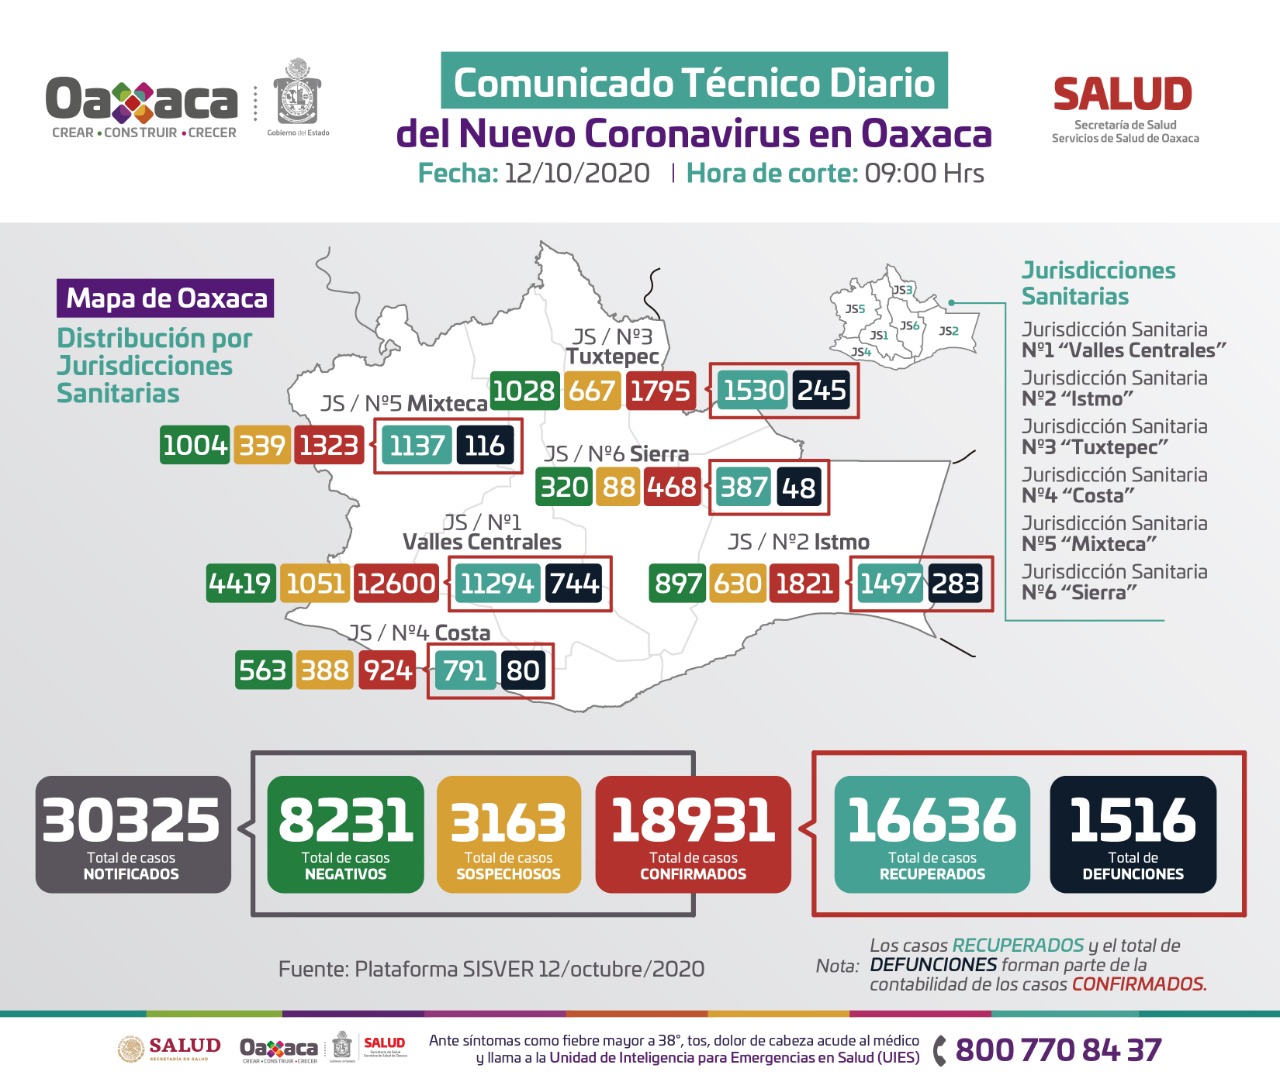 736 personas cursan actualmente la enfermedad de Covid-19 en Oaxaca